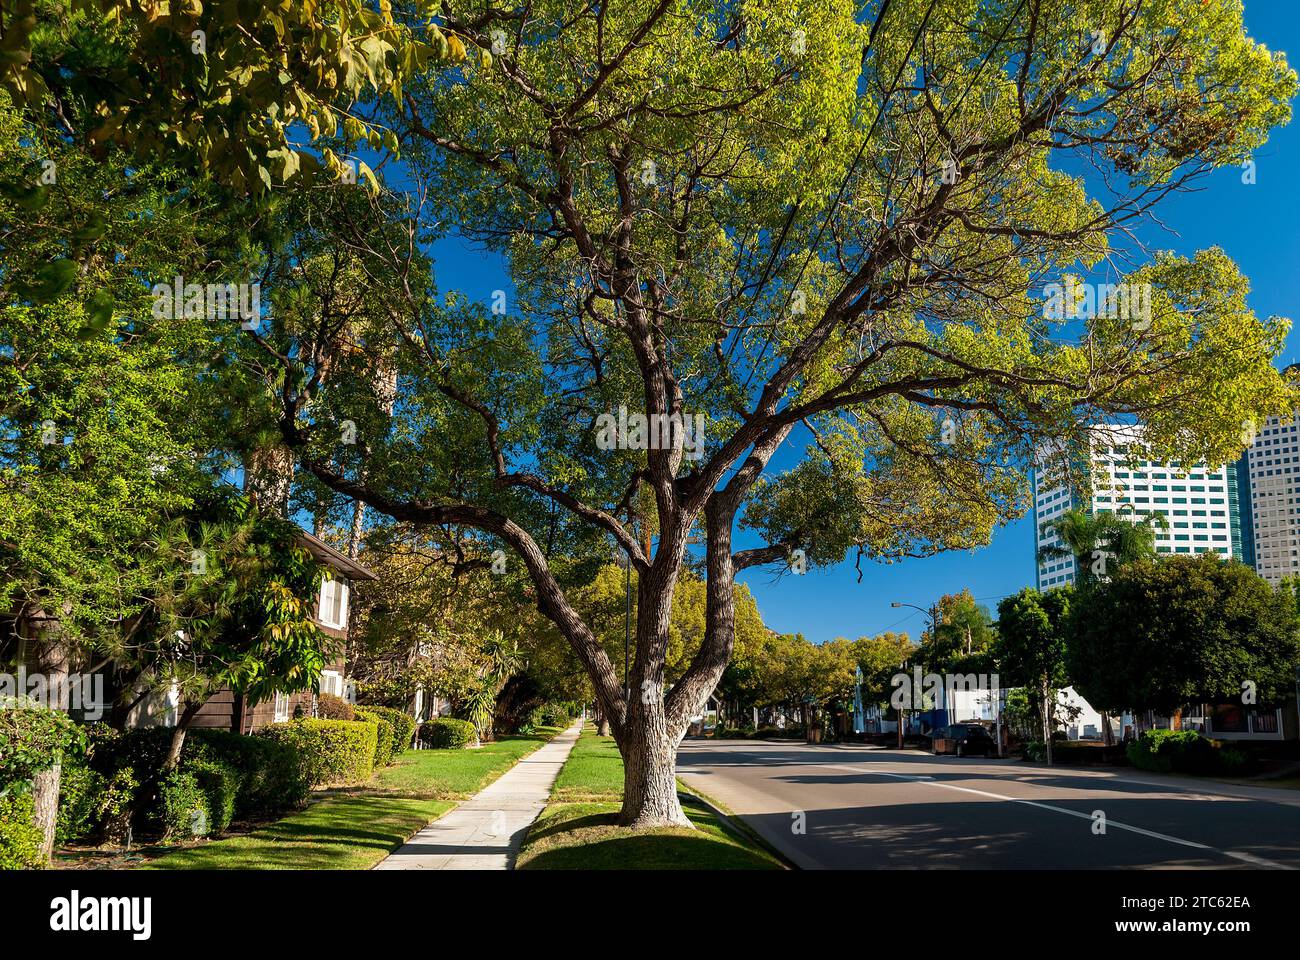 Une scène tranquille d'une rue de la ville bordée d'arbres, avec un trottoir les traversant Banque D'Images